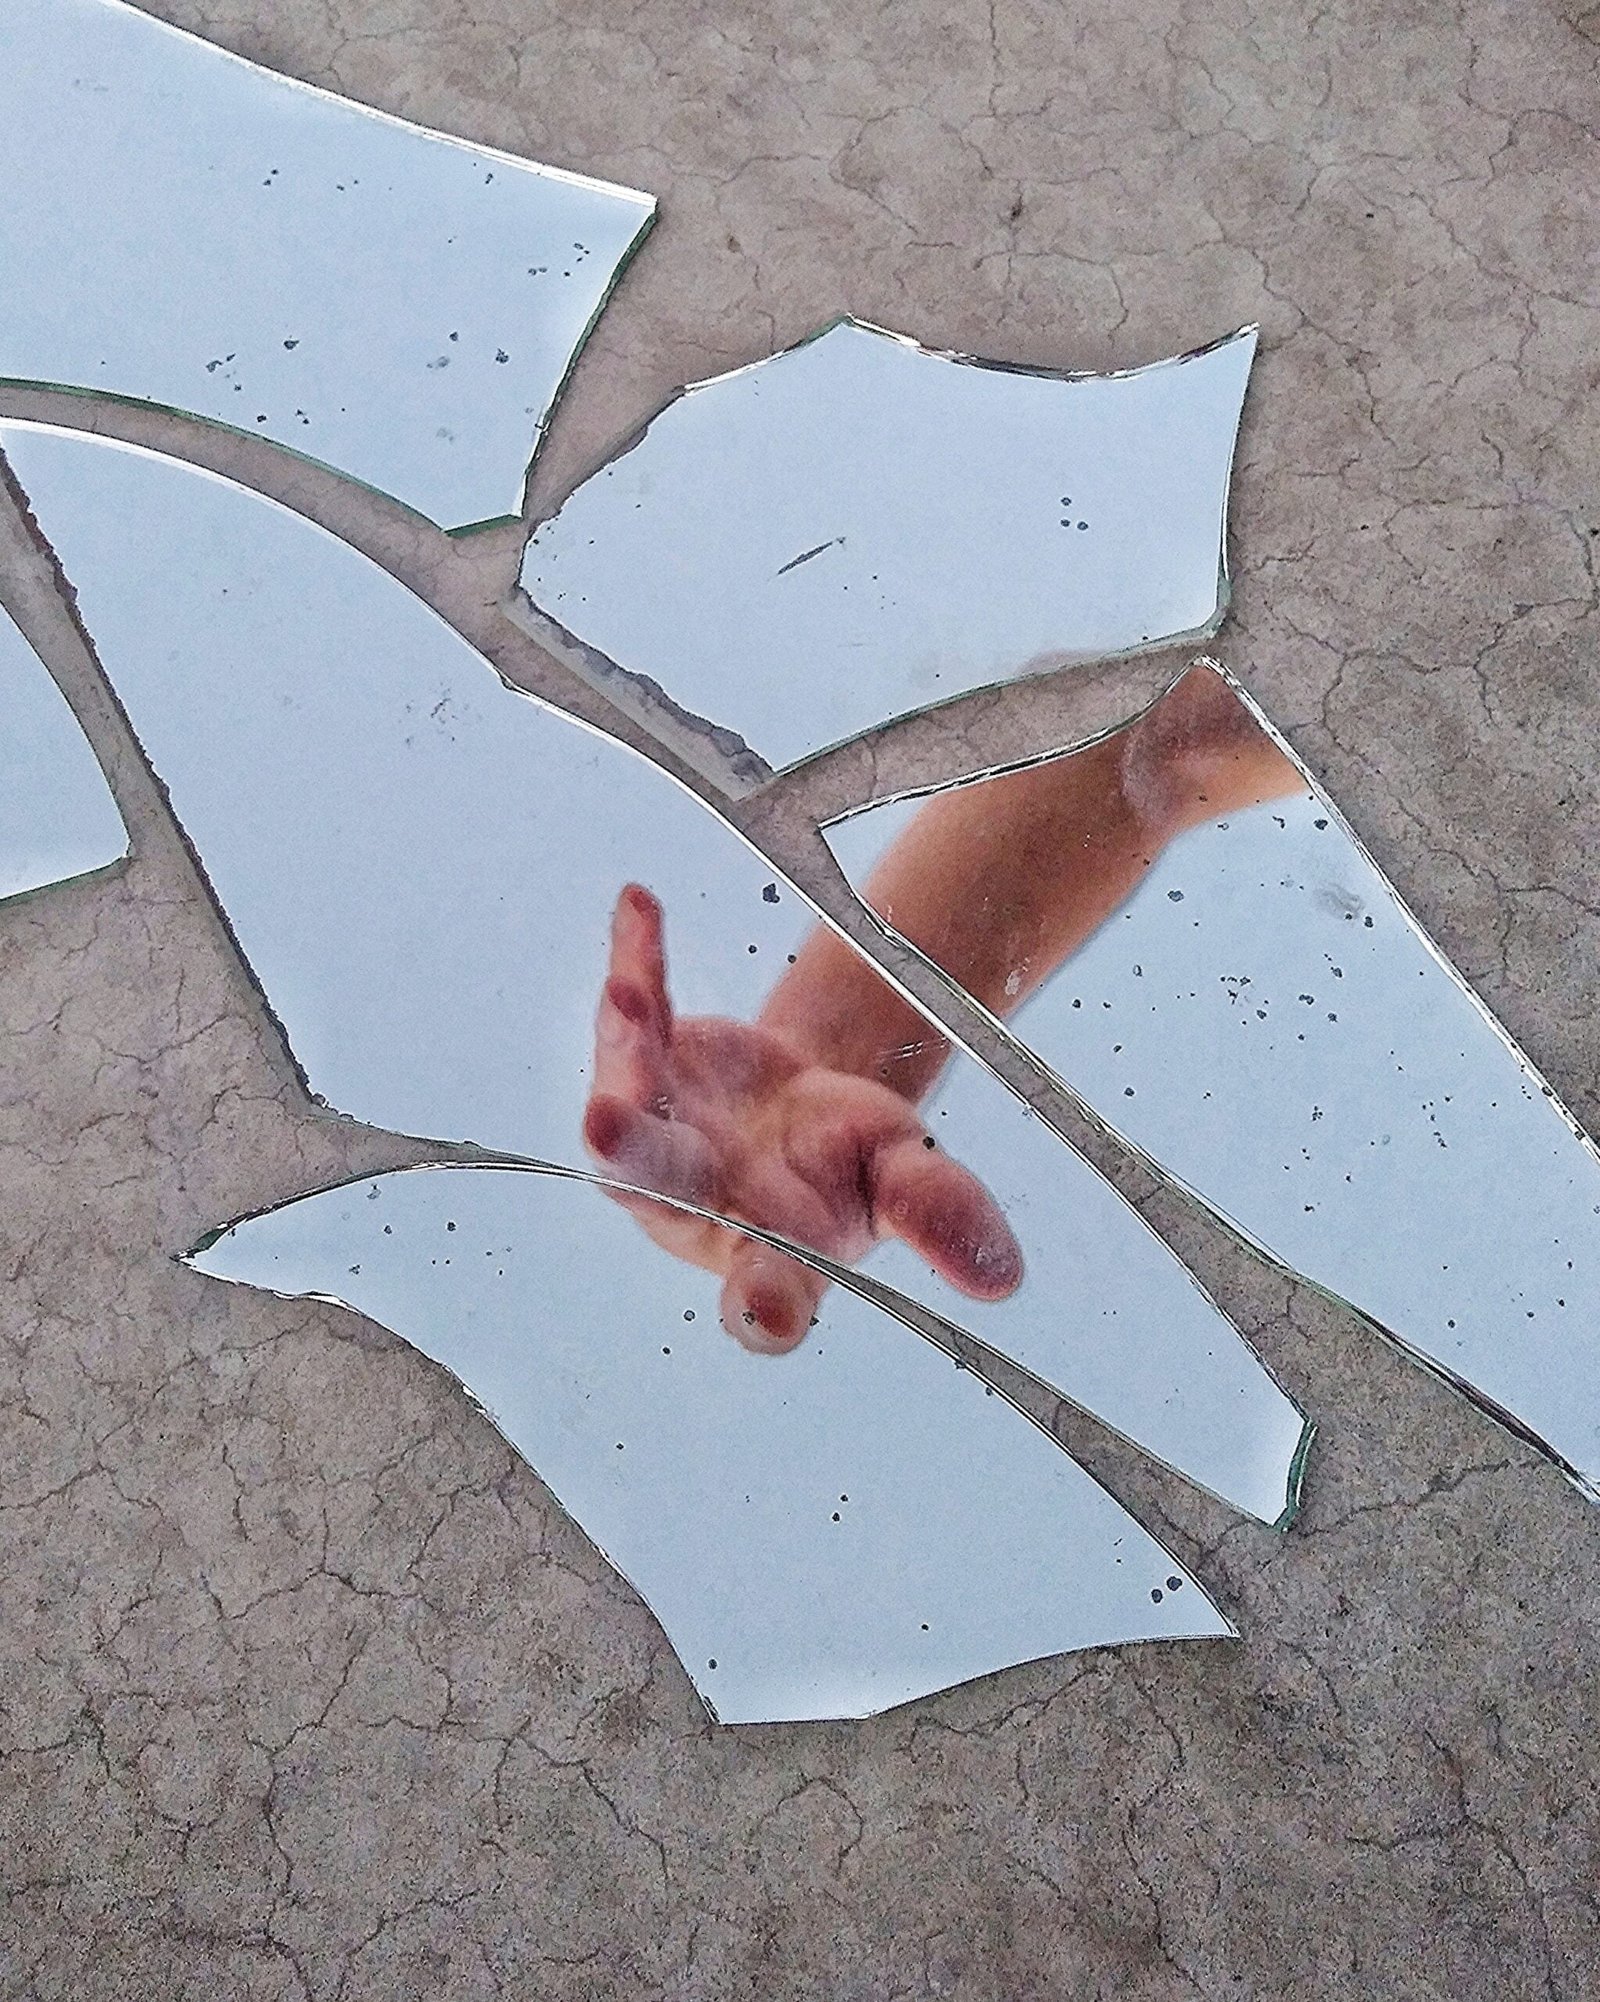 A photograph of a broken mirror reflecting a hand